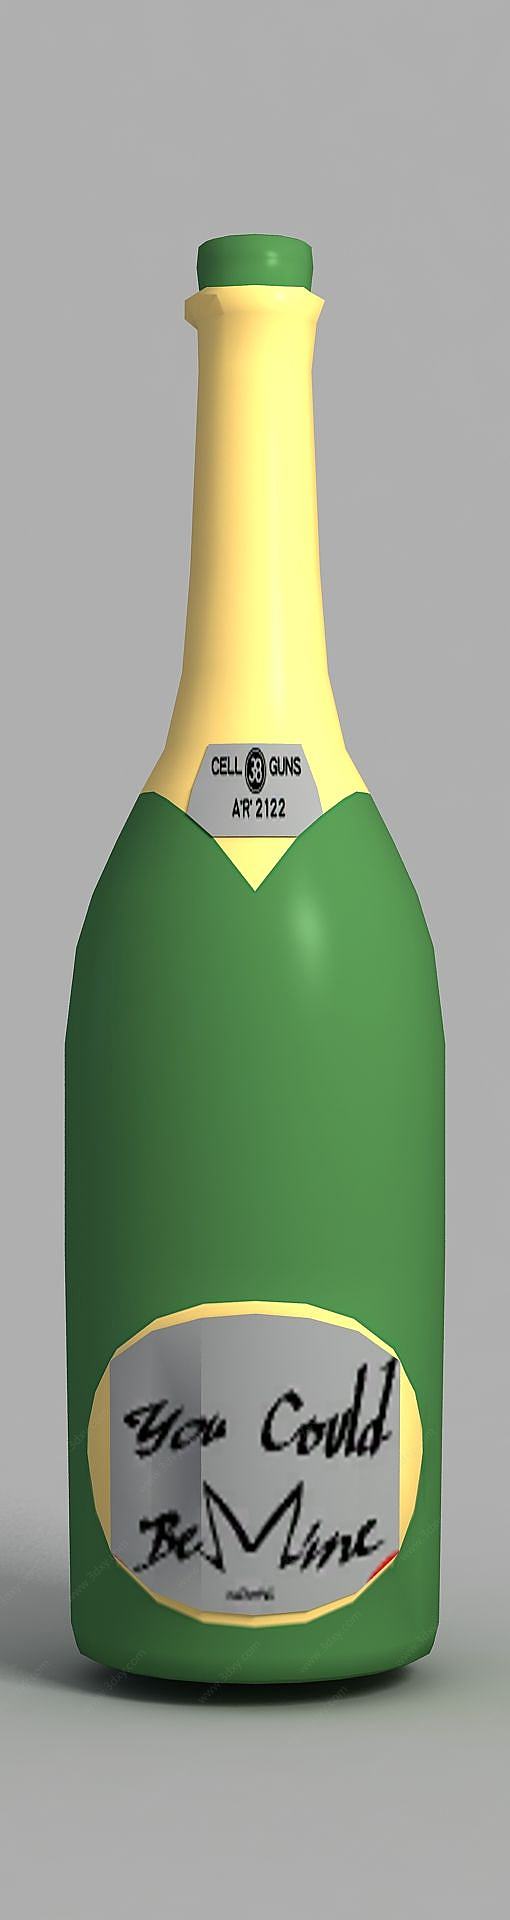 动漫酒瓶3D模型